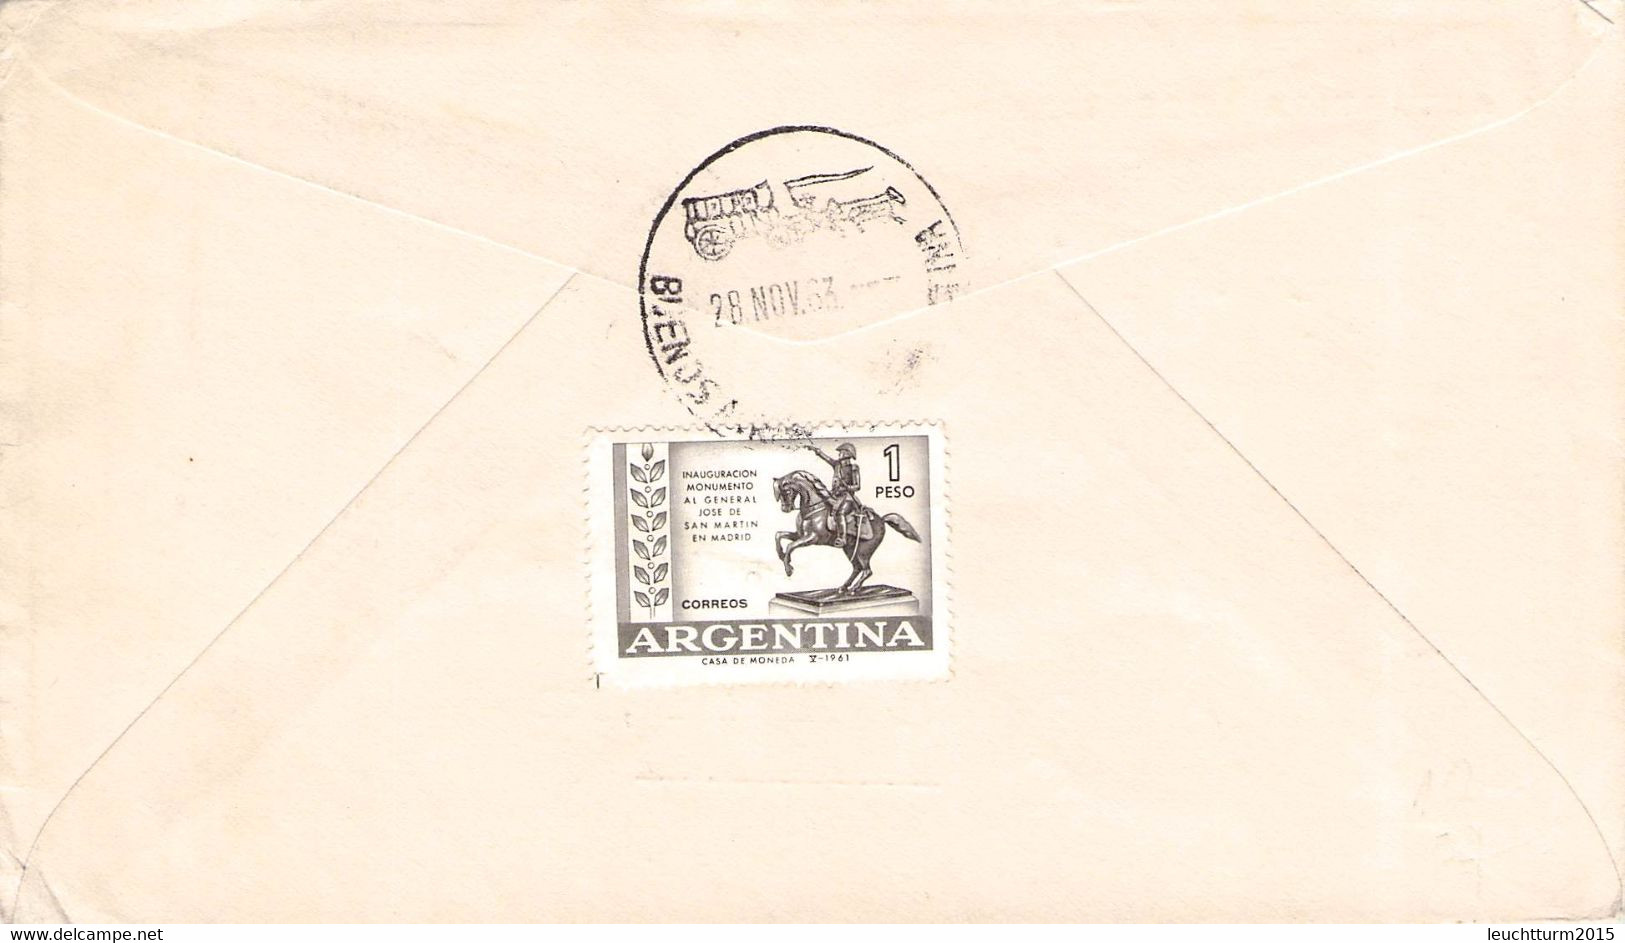 ARGENTINA - LETTER 1961 ANTARTIDA ARGENTINA > ROMA / QG109 - Cartas & Documentos